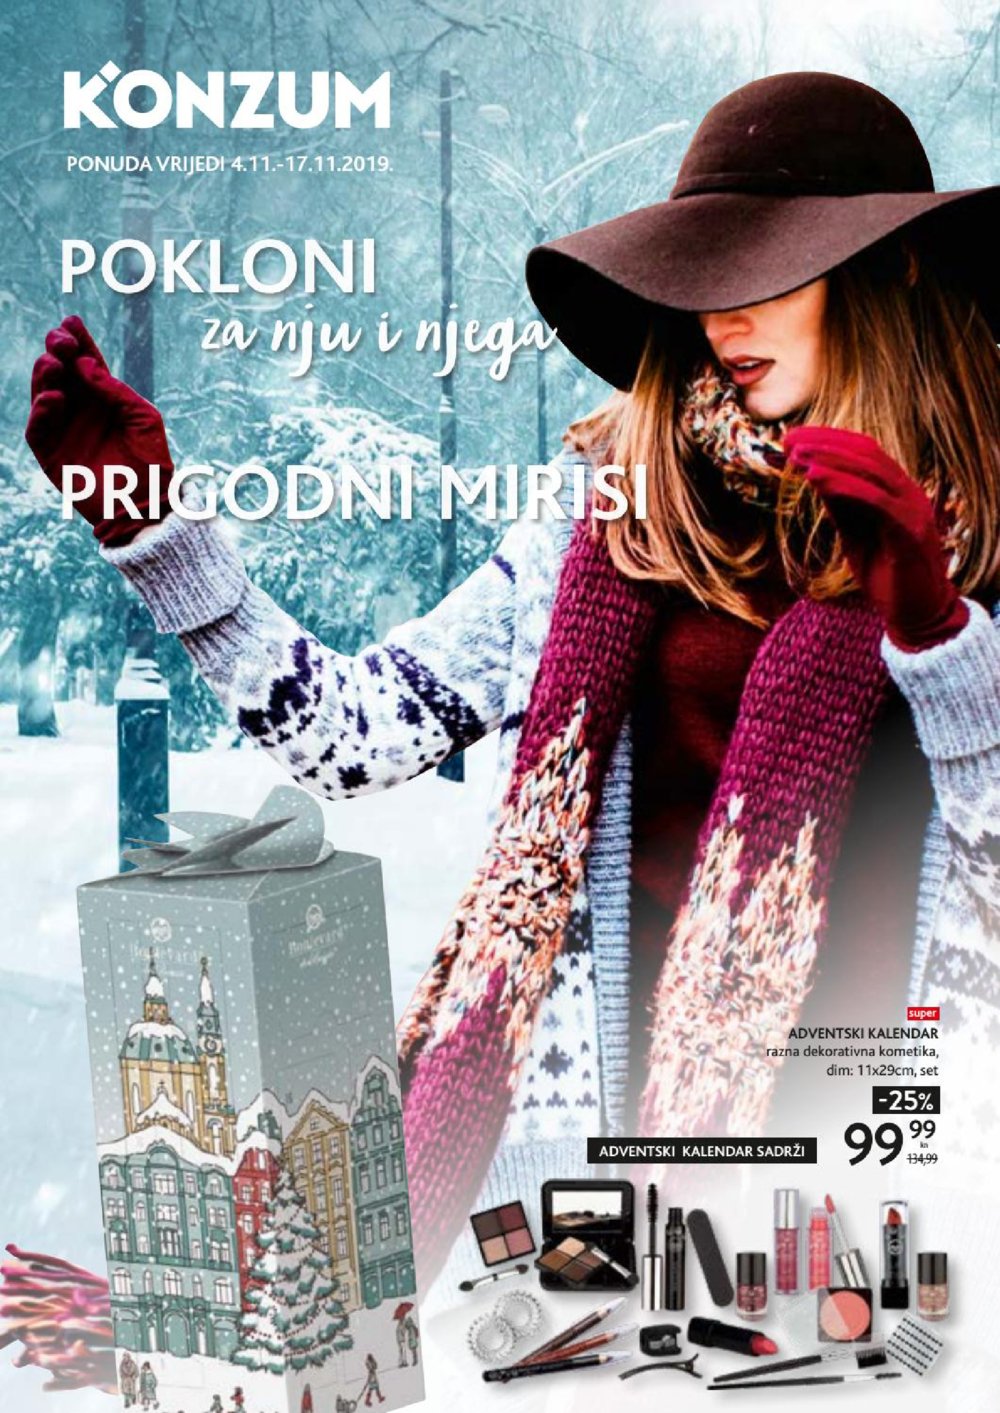 Konzum katalog Pokloni 04.11.-17.11.2019.